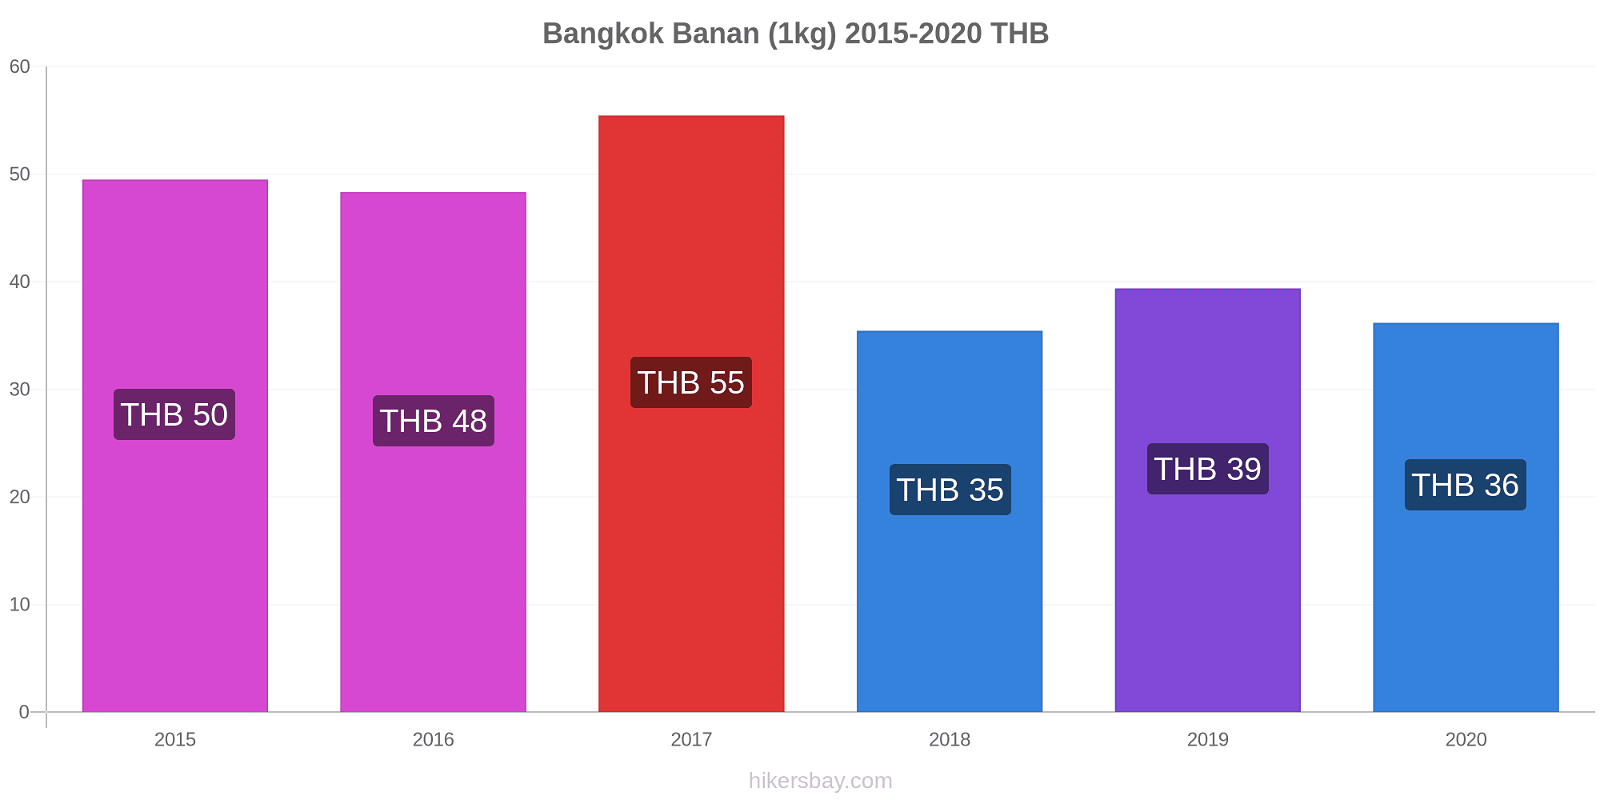 Bangkok prisendringer Banan (1kg) hikersbay.com